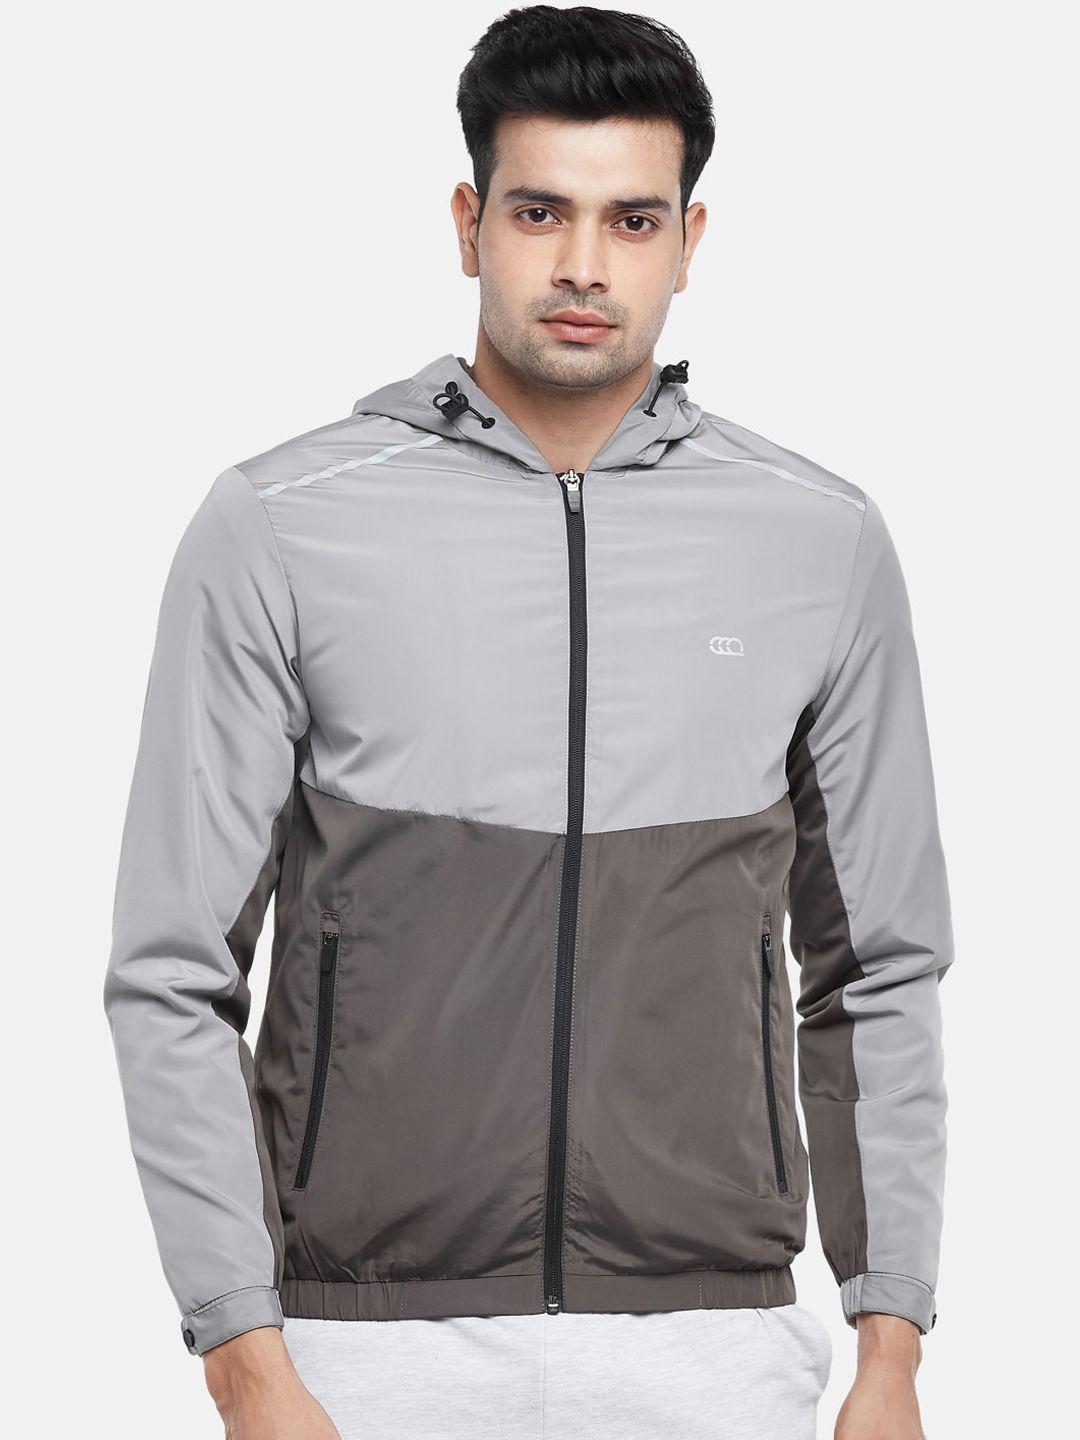 ajile by pantaloons men grey colourblocked sporty jacket